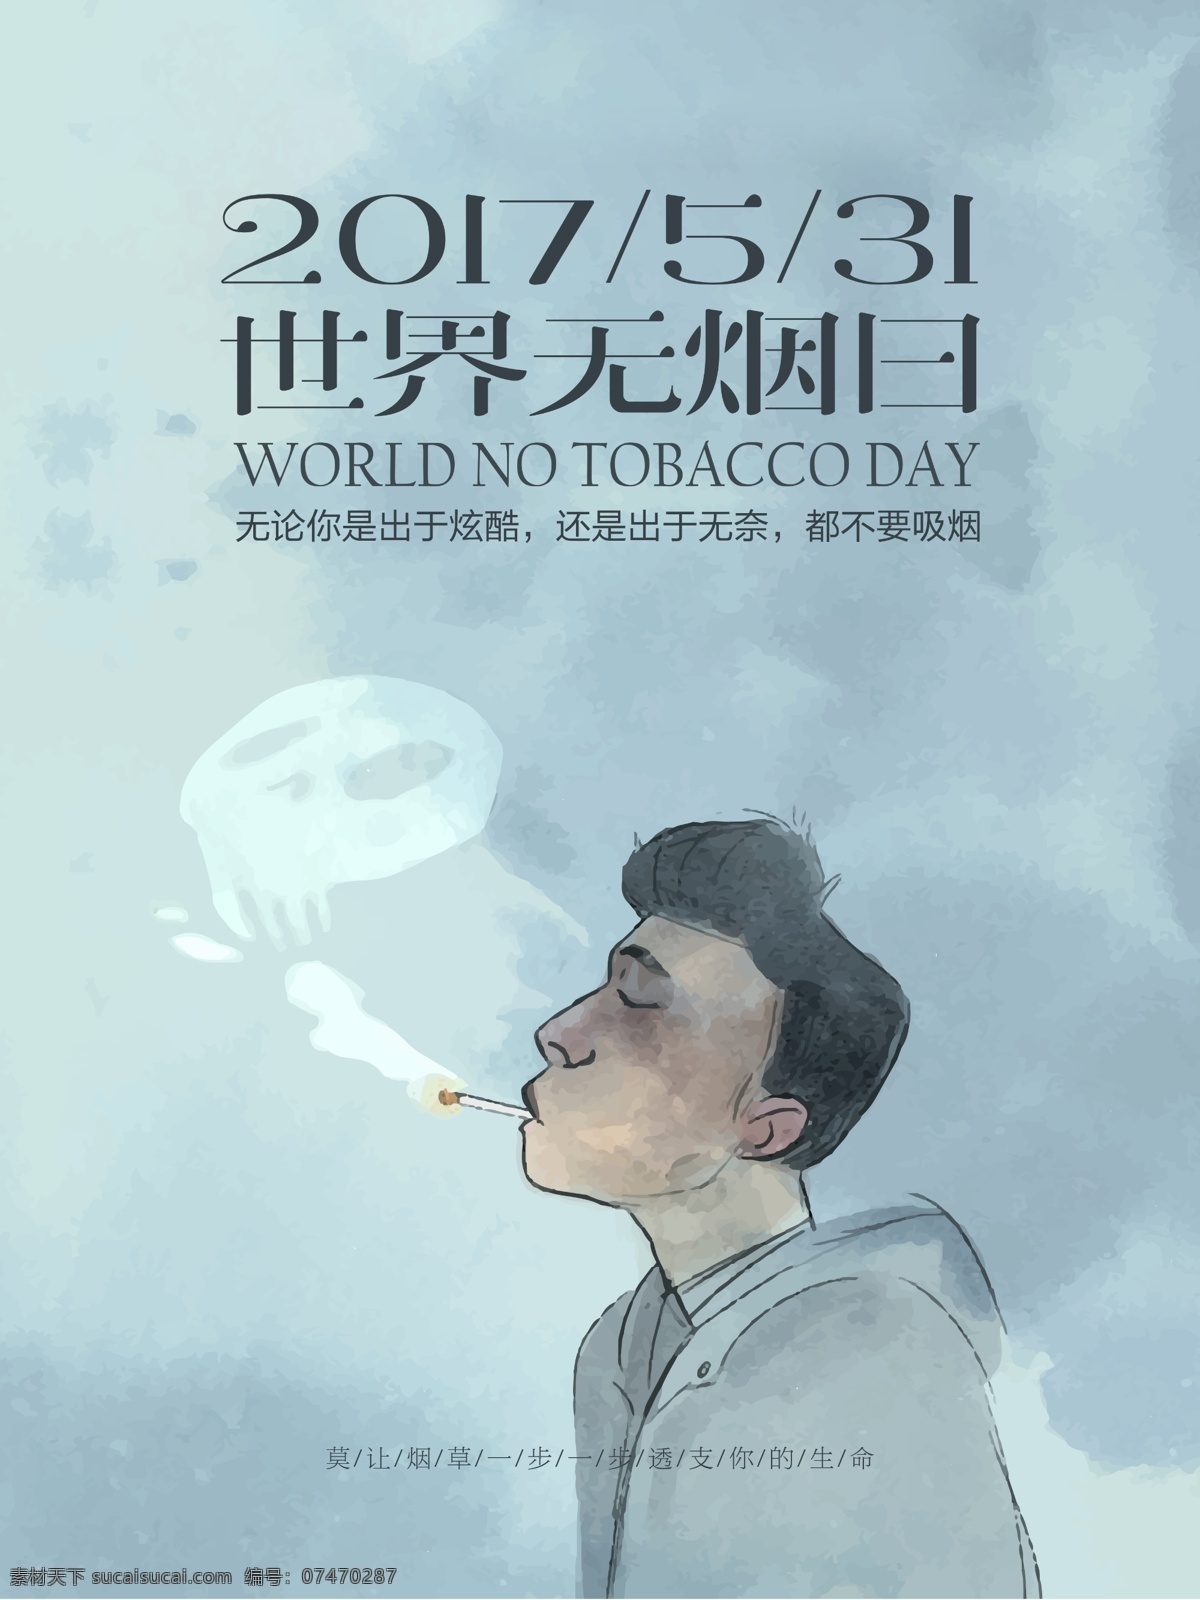 531 世界 无烟日 公益 宣传海报 创意 2017 世界无烟日 国际无烟日 禁烟 拒绝 抽烟 二手烟 烟草 吸烟 危害 宣传 海报 展板 手抄报